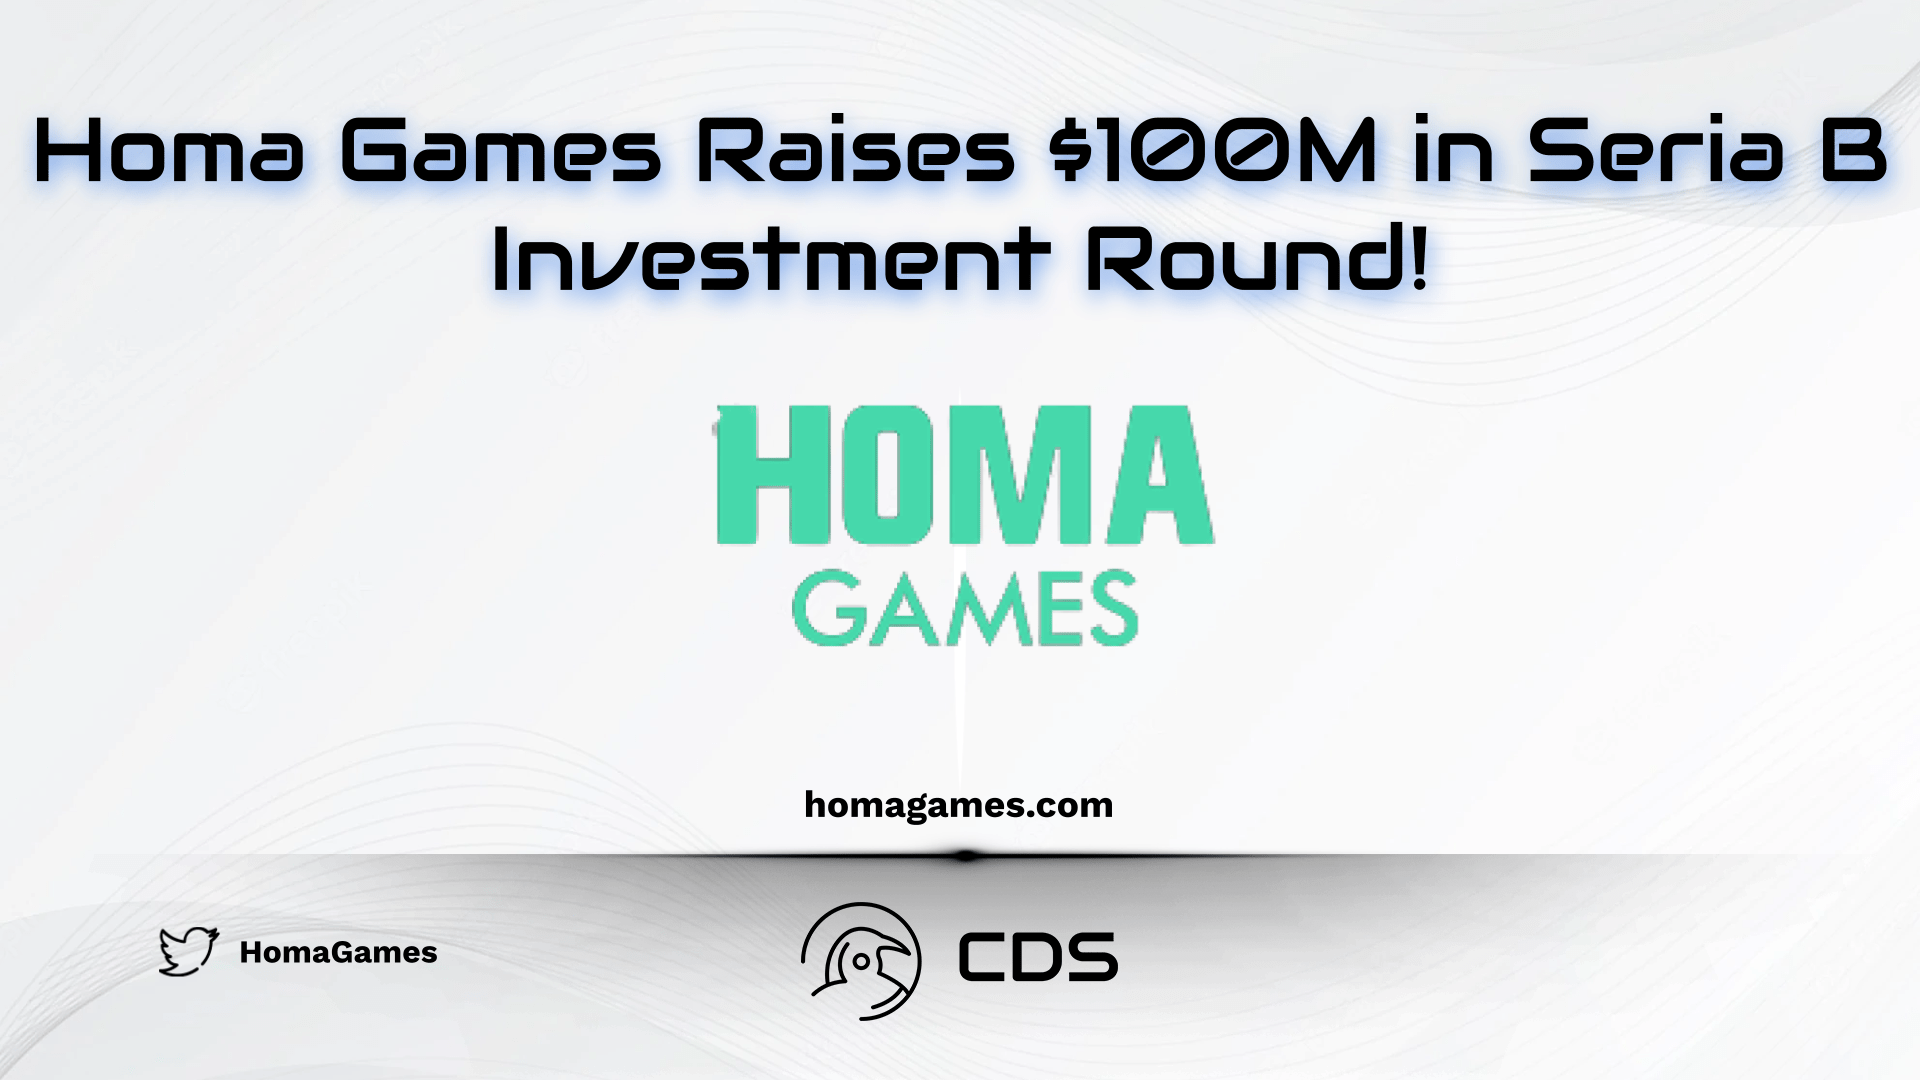 Homa Games Raises $100M in Seria B Investment Round!